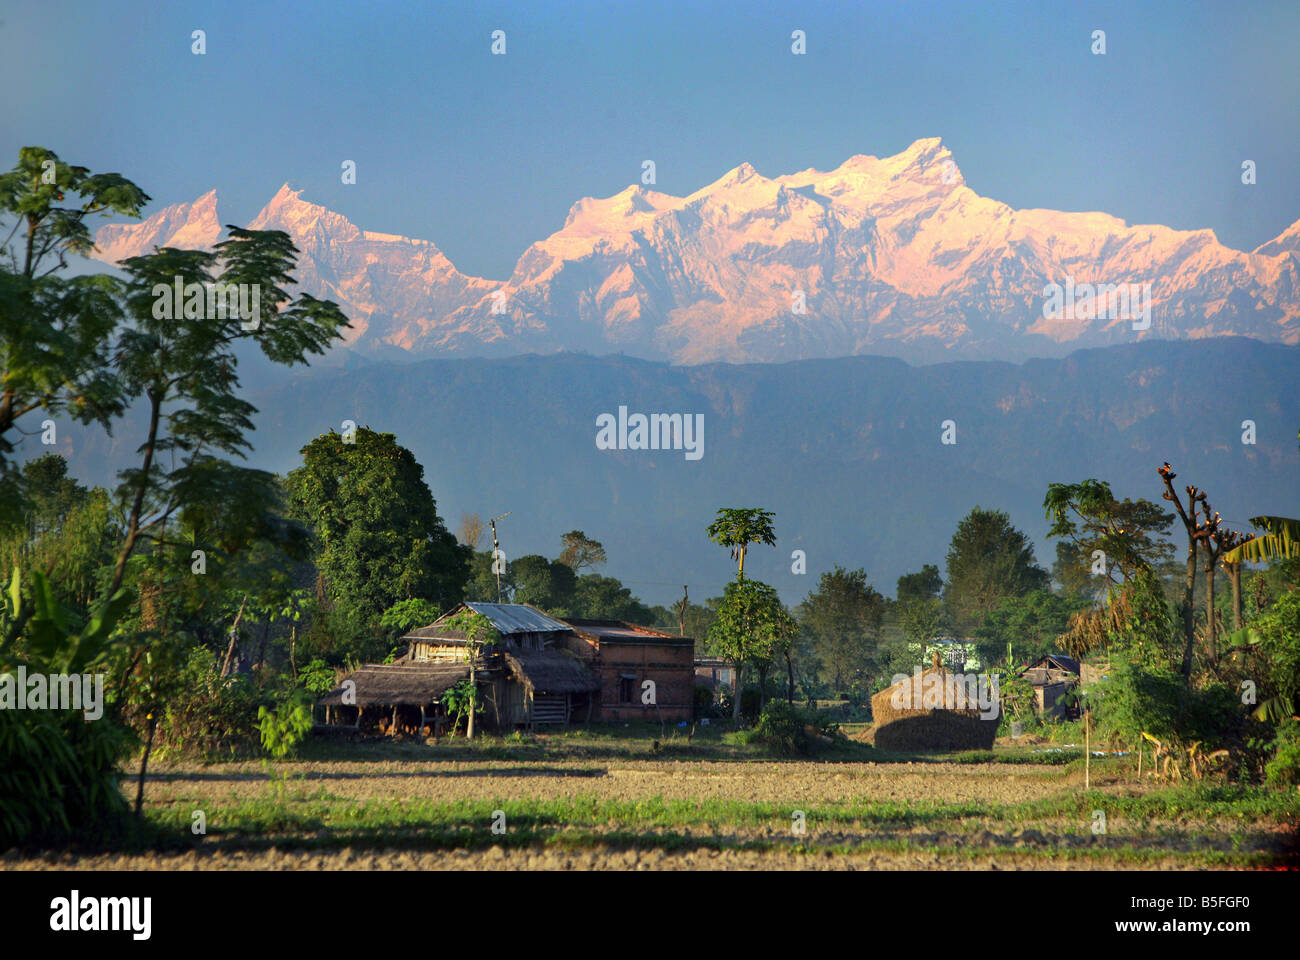 Nepal, Himalaya mountains Stock Photo